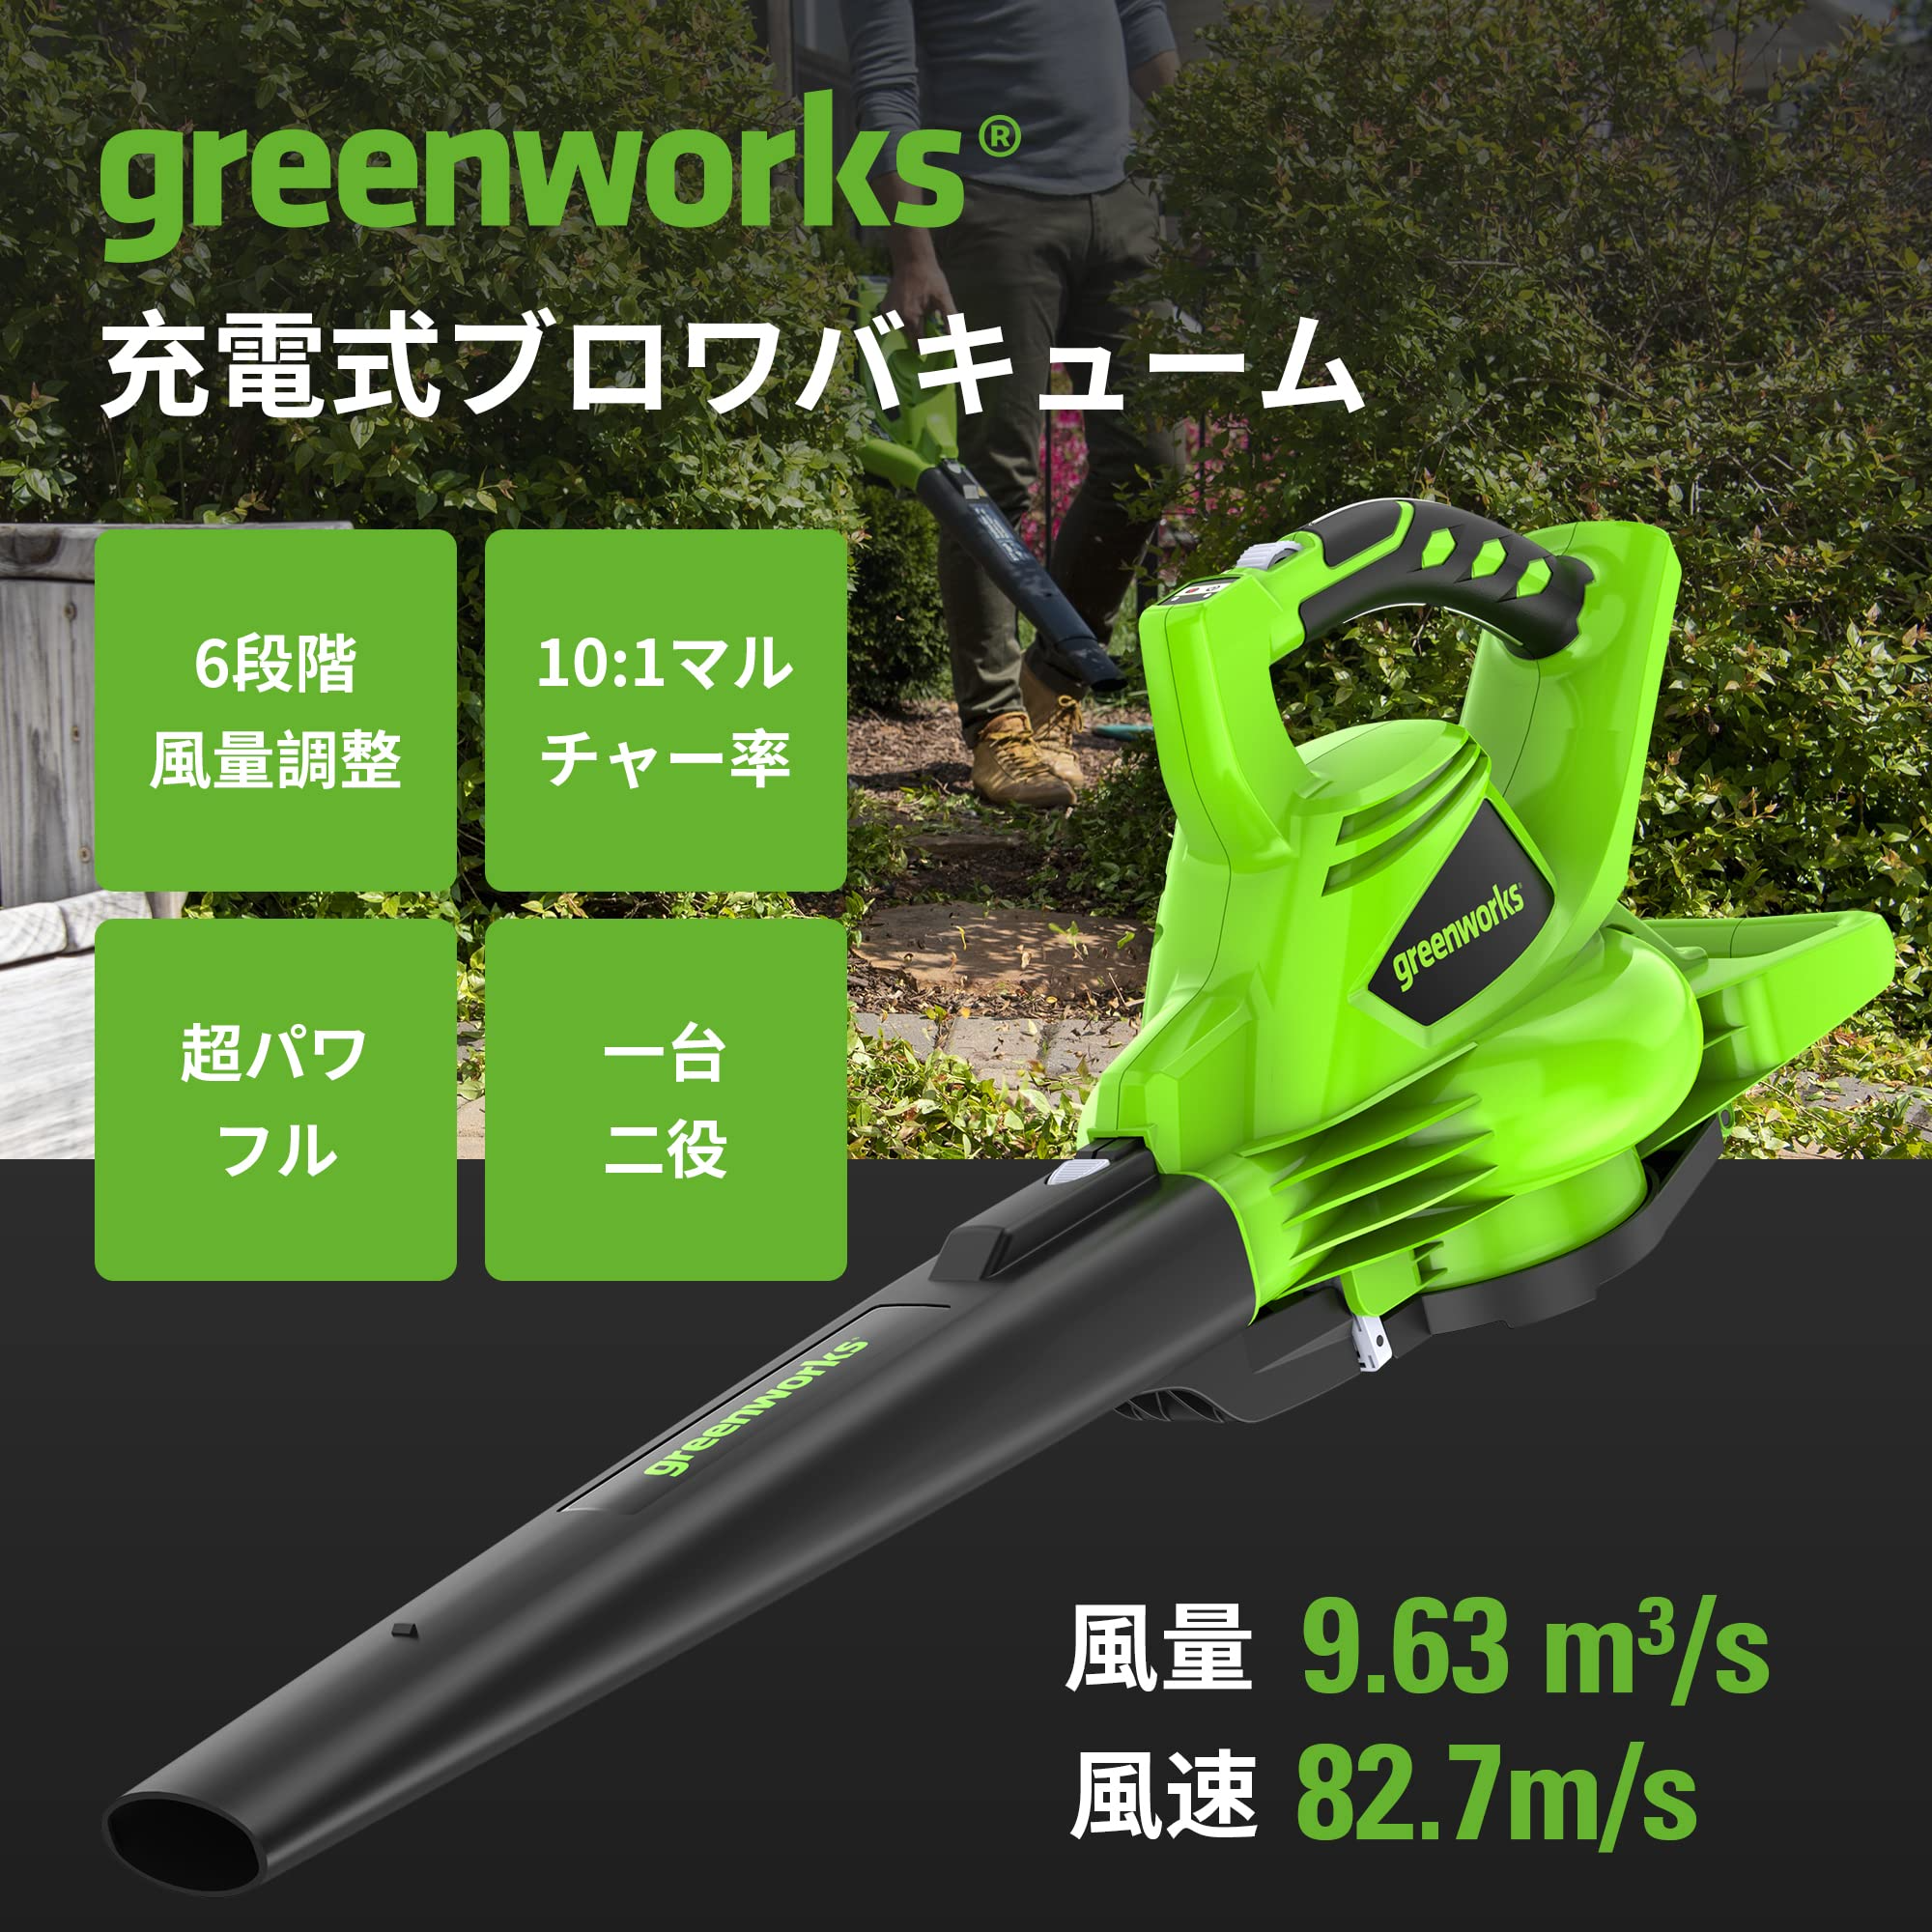 Greenworksブロワー 充電式ブロワー 落ち葉バキューム 40V強力ブロワー